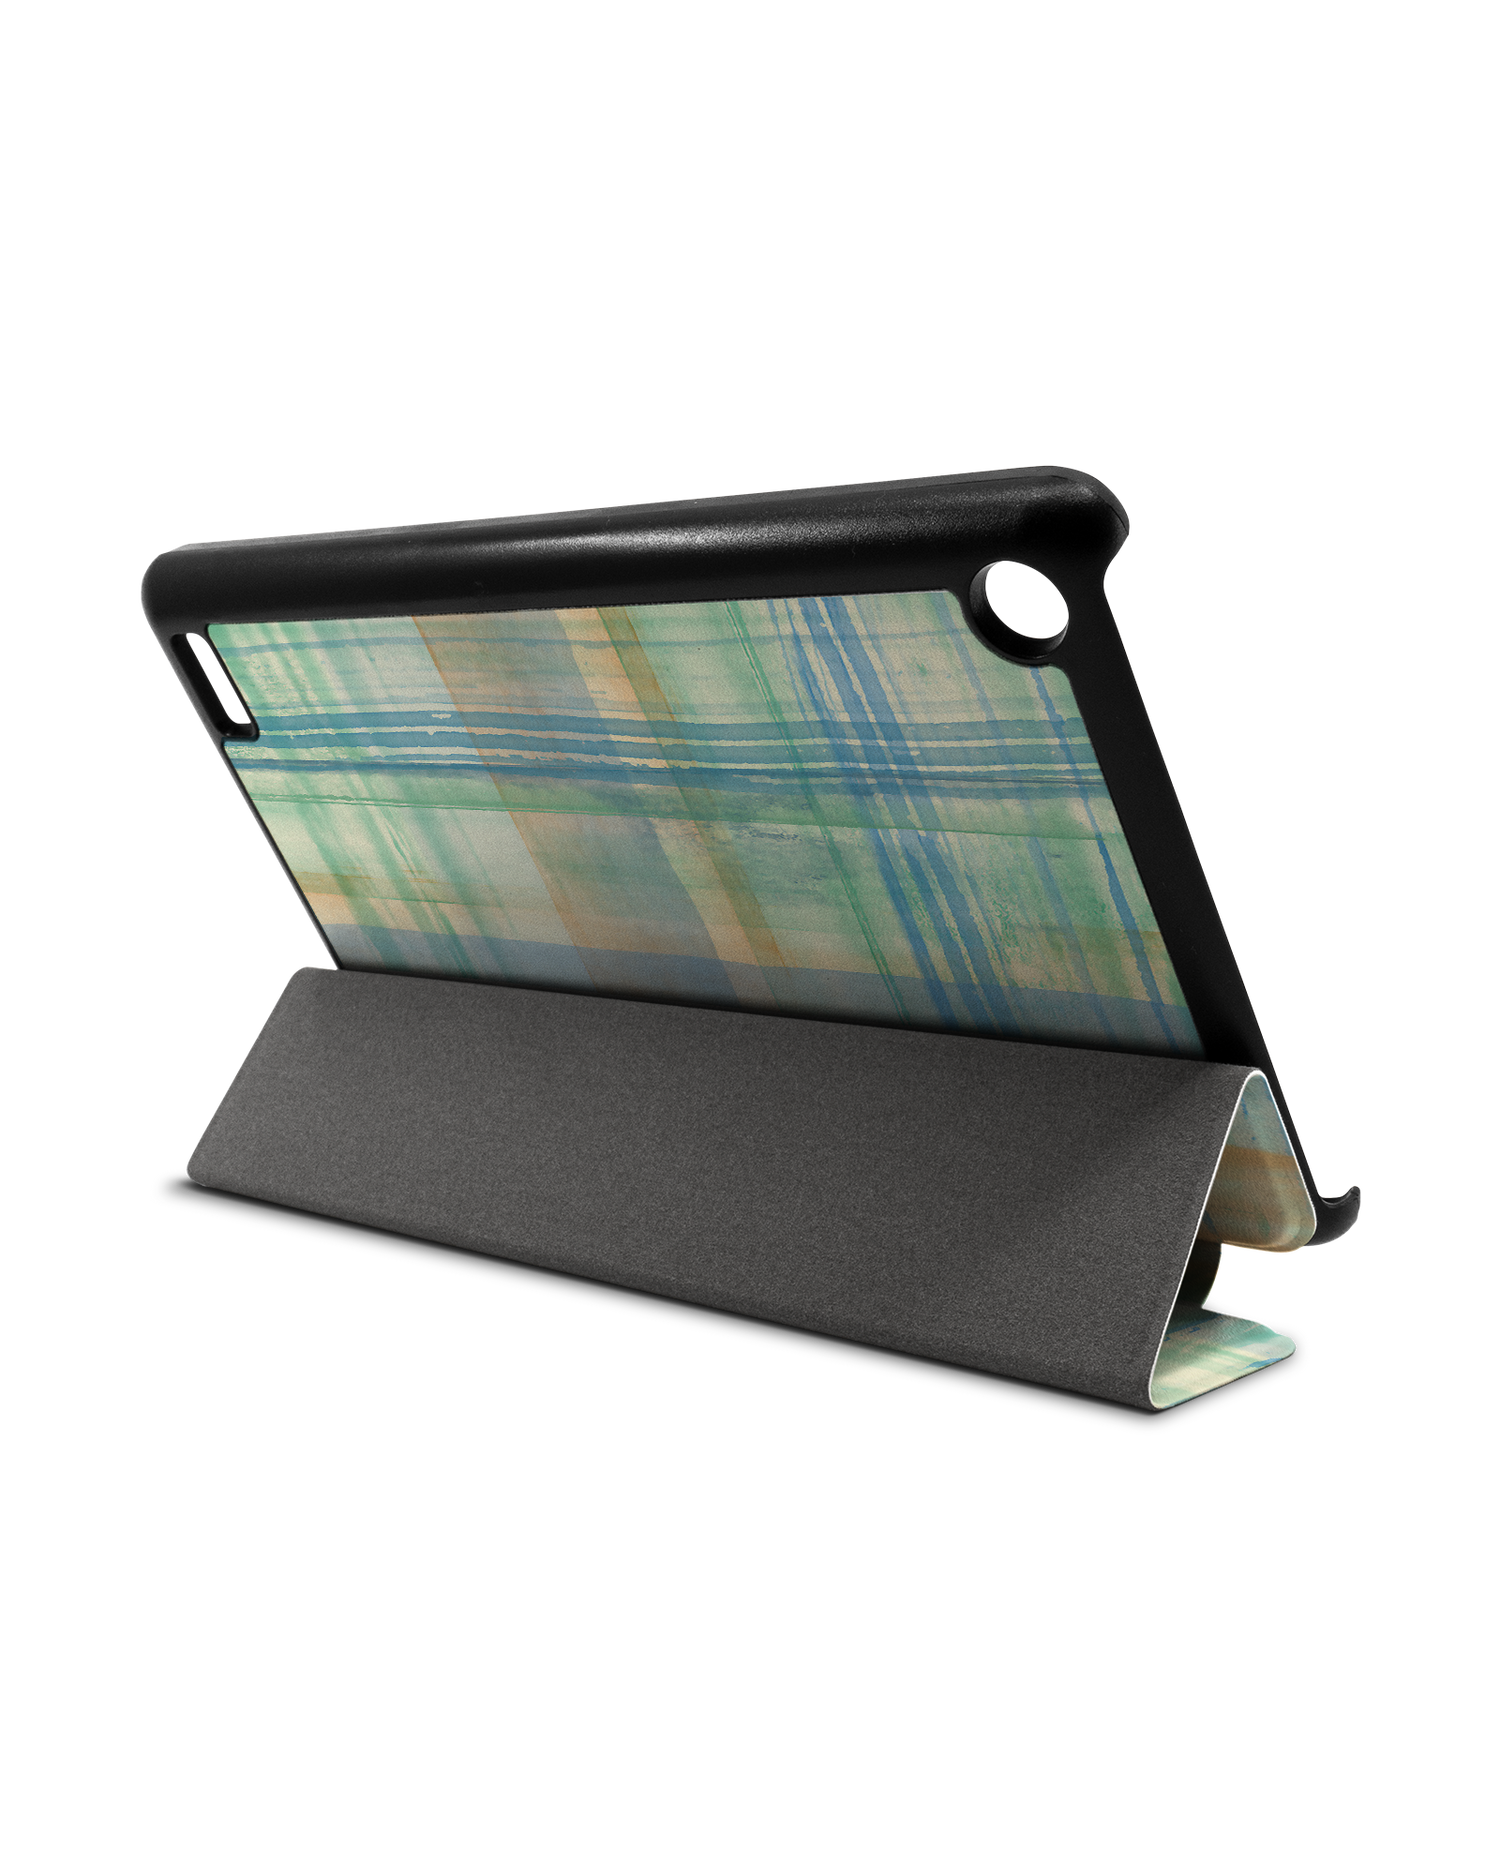 Washed Out Plaid Tablet Smart Case für Amazon Fire 7: Aufgestellt im Querformat